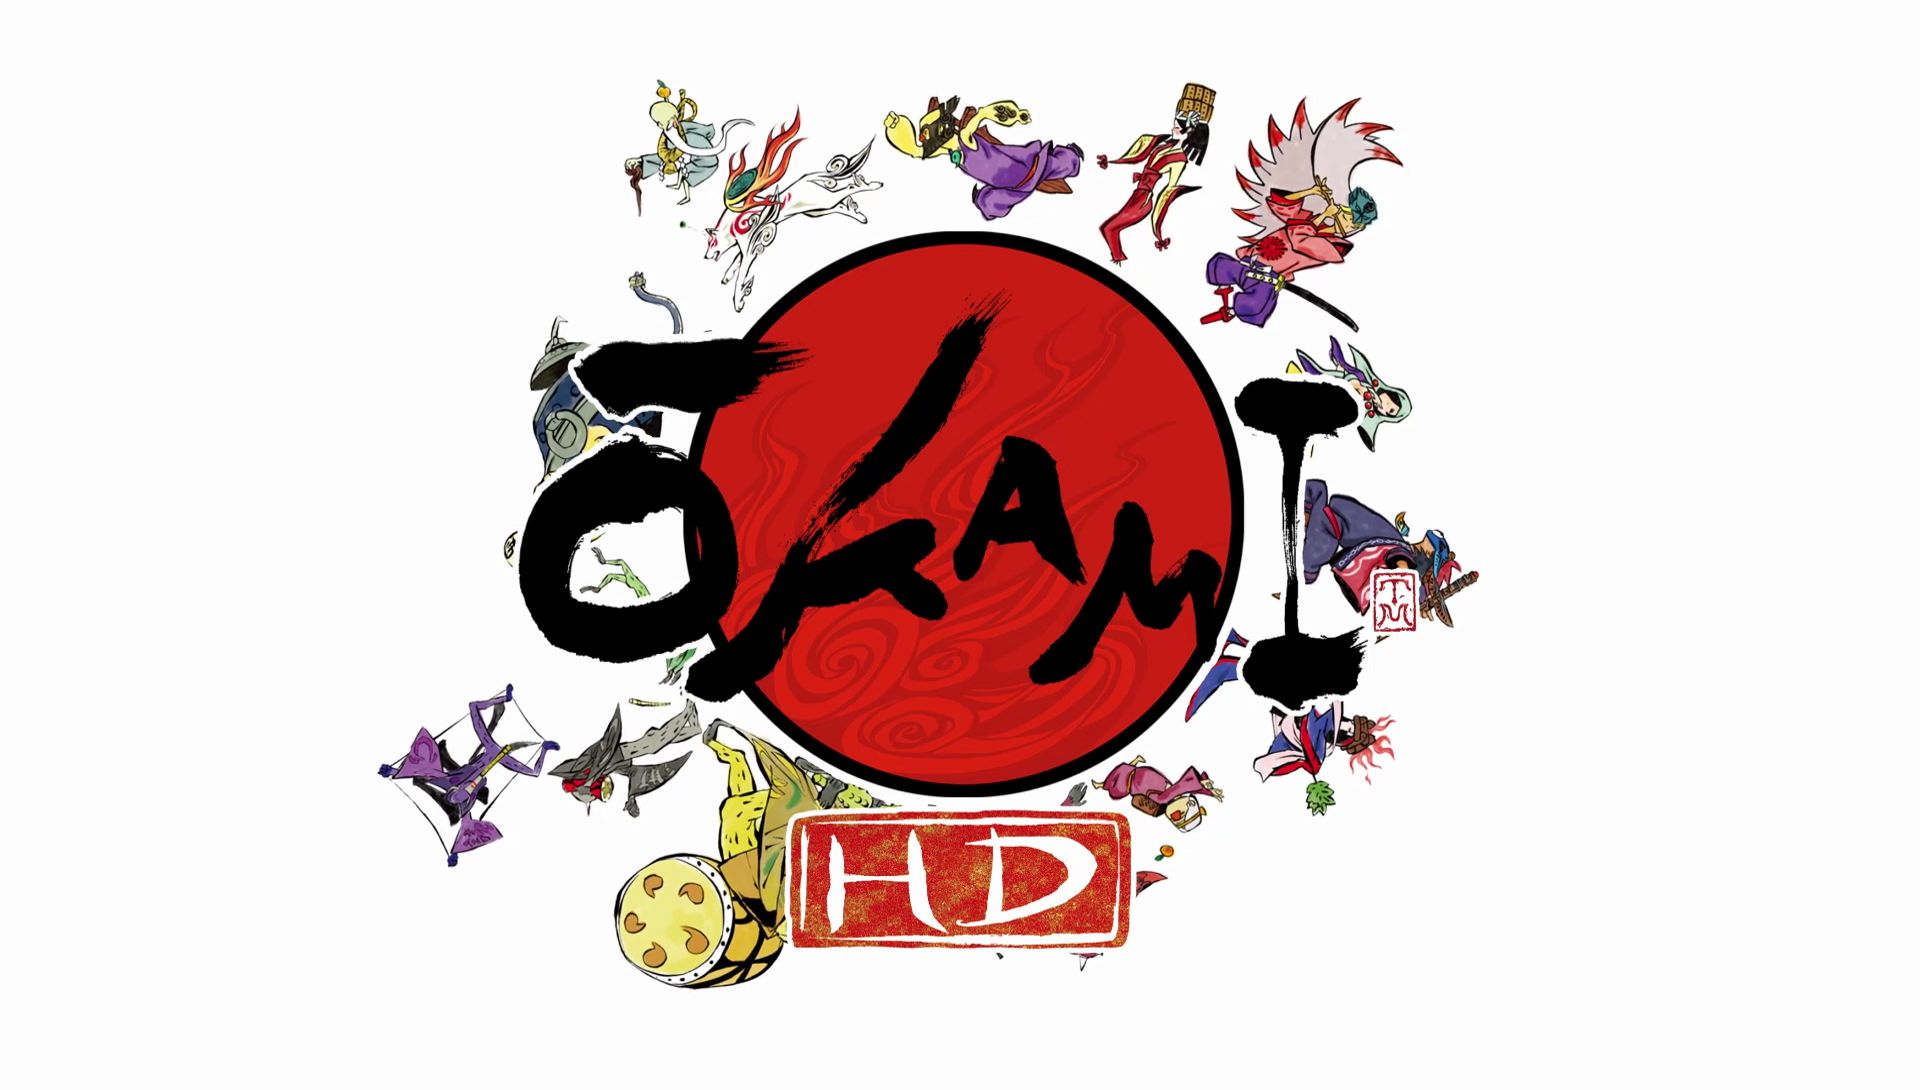 Okami / Ookami the Best (B) PS2